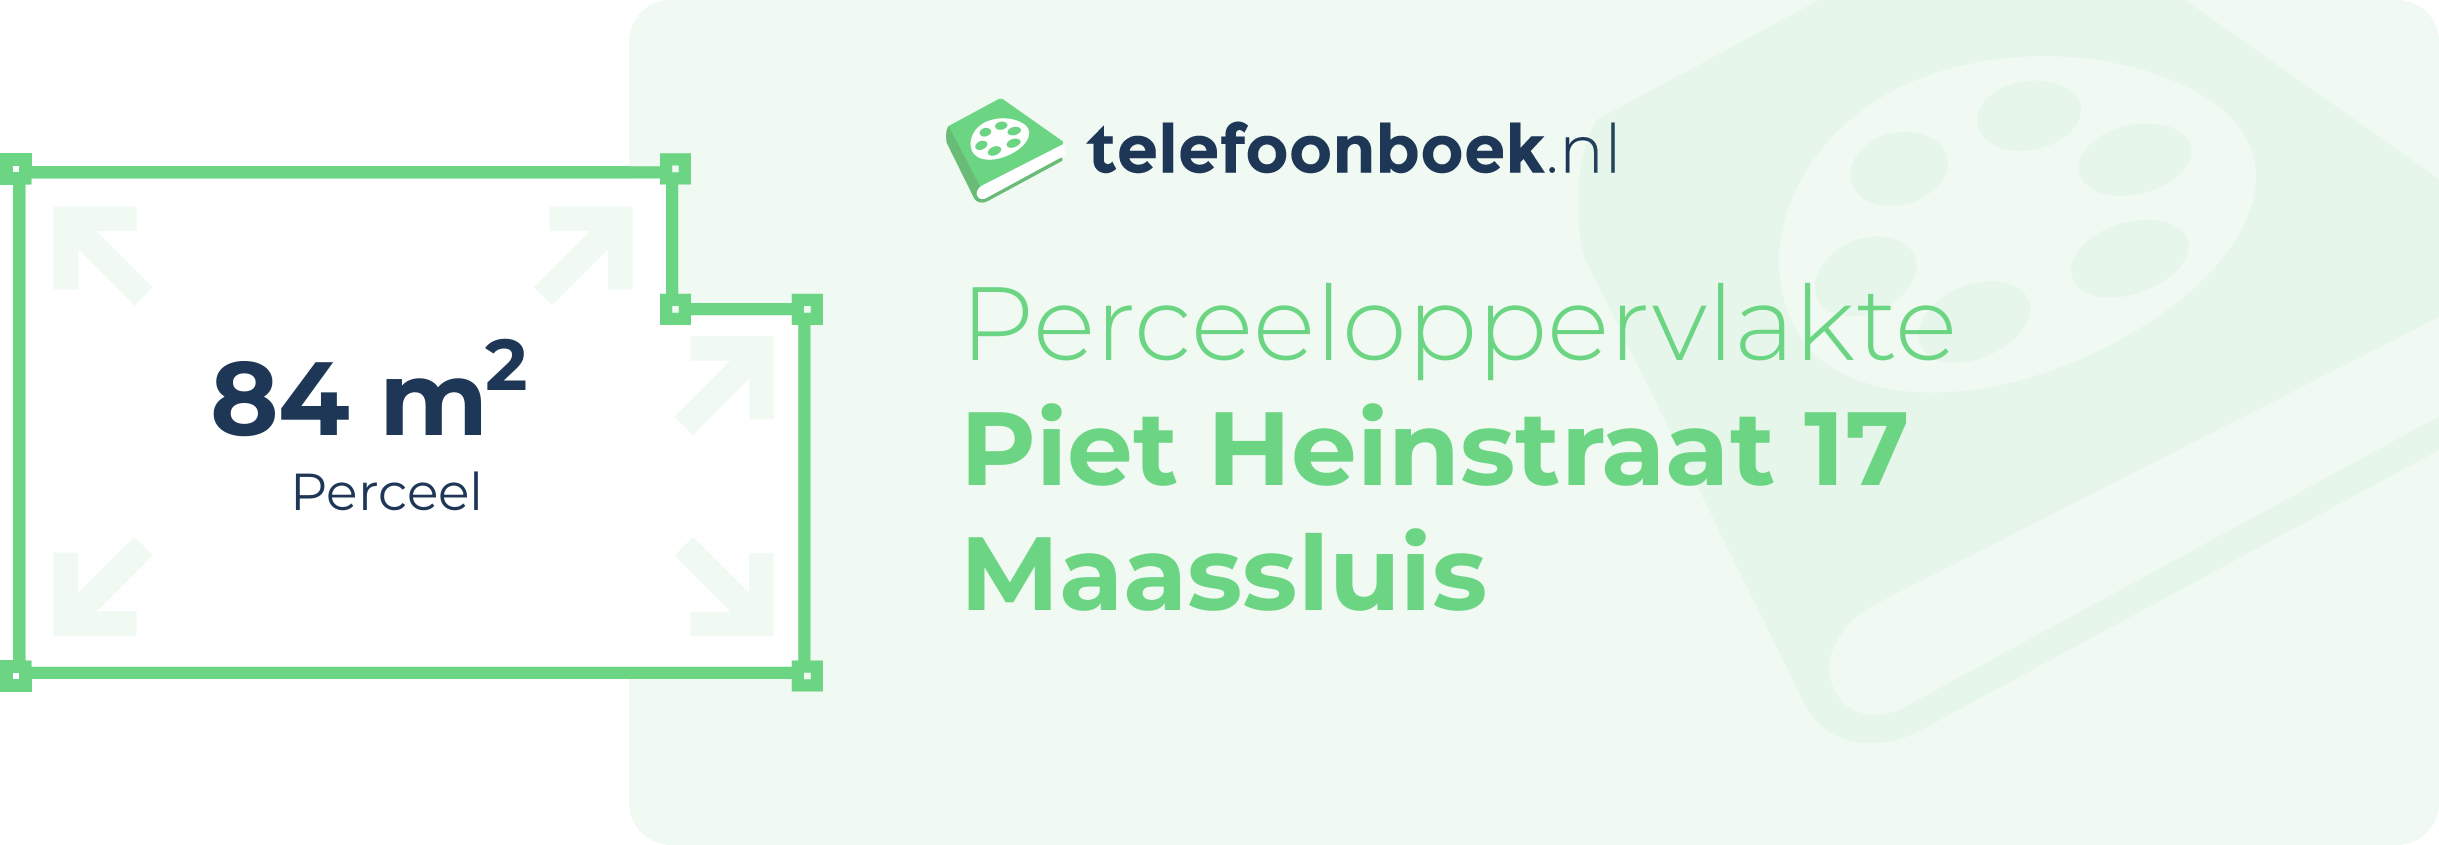 Perceeloppervlakte Piet Heinstraat 17 Maassluis